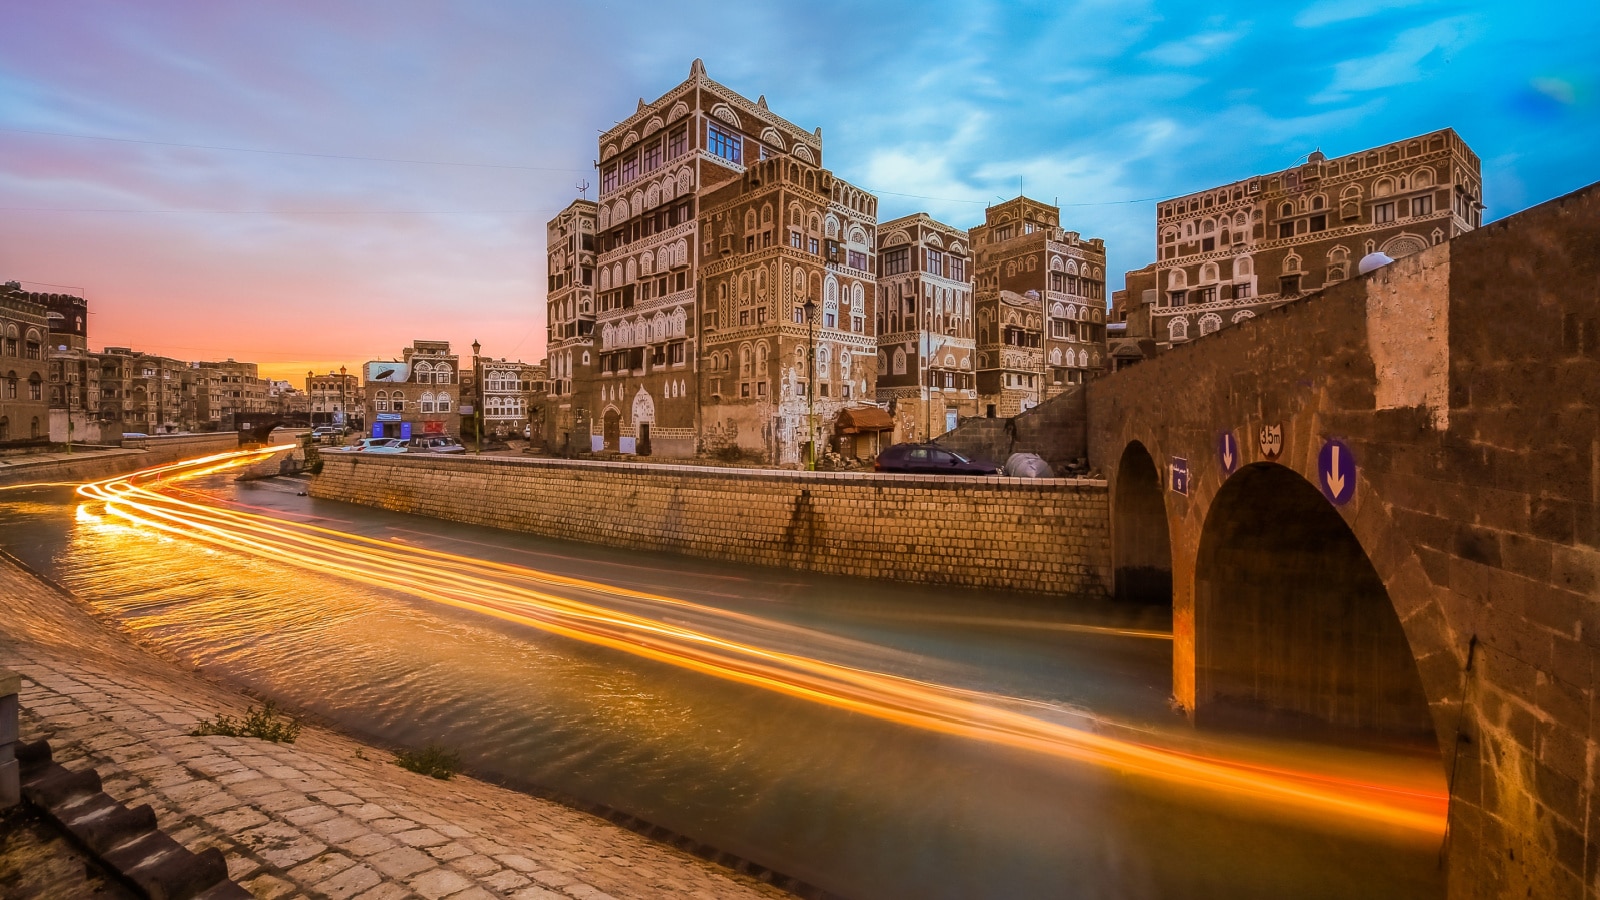 Assailah in old Sana'a - Yemen